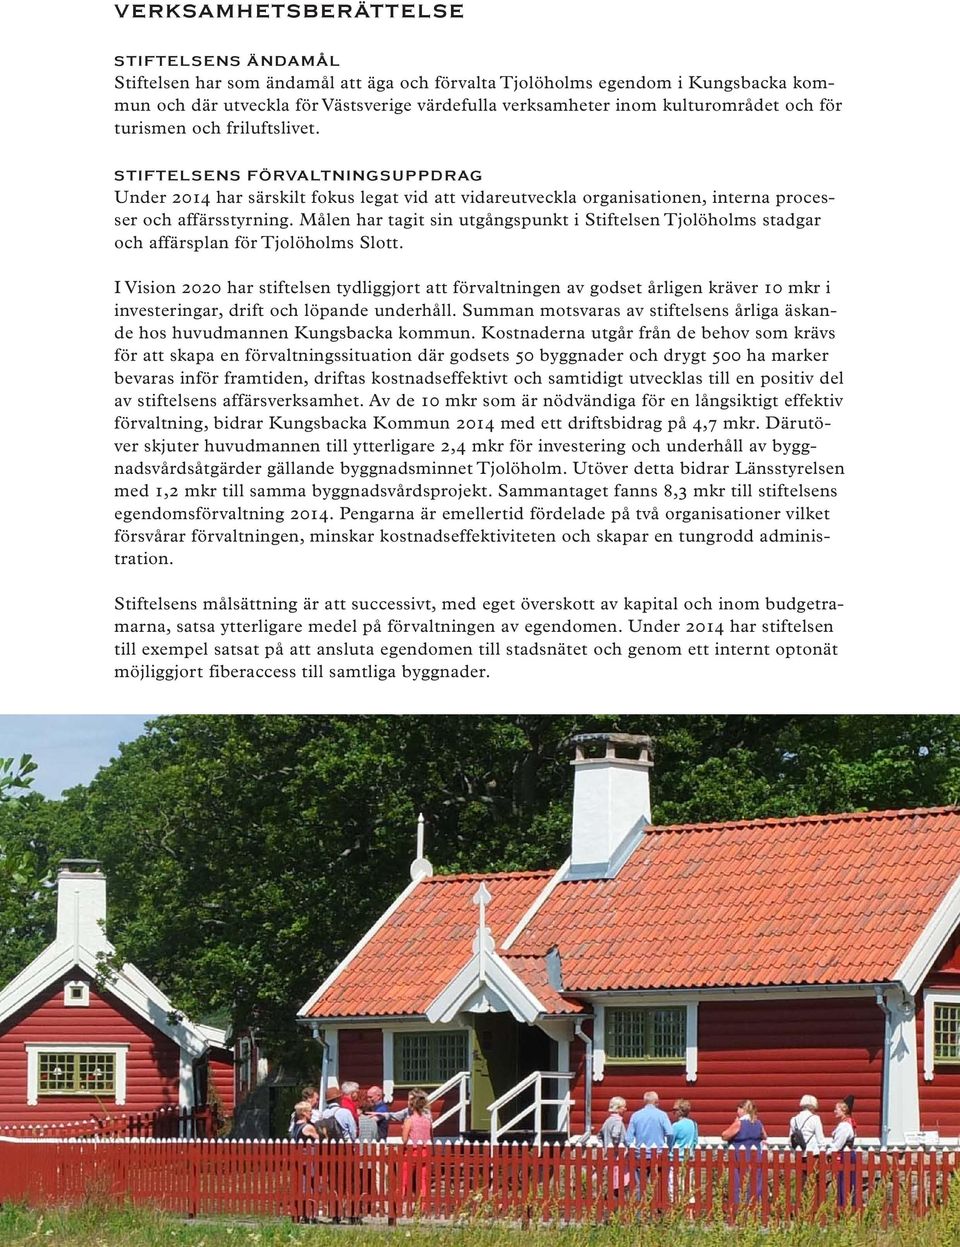 Målen har tagit sin utgångspunkt i Stiftelsen Tjolöholms stadgar och affärsplan för Tjolöholms Slott.